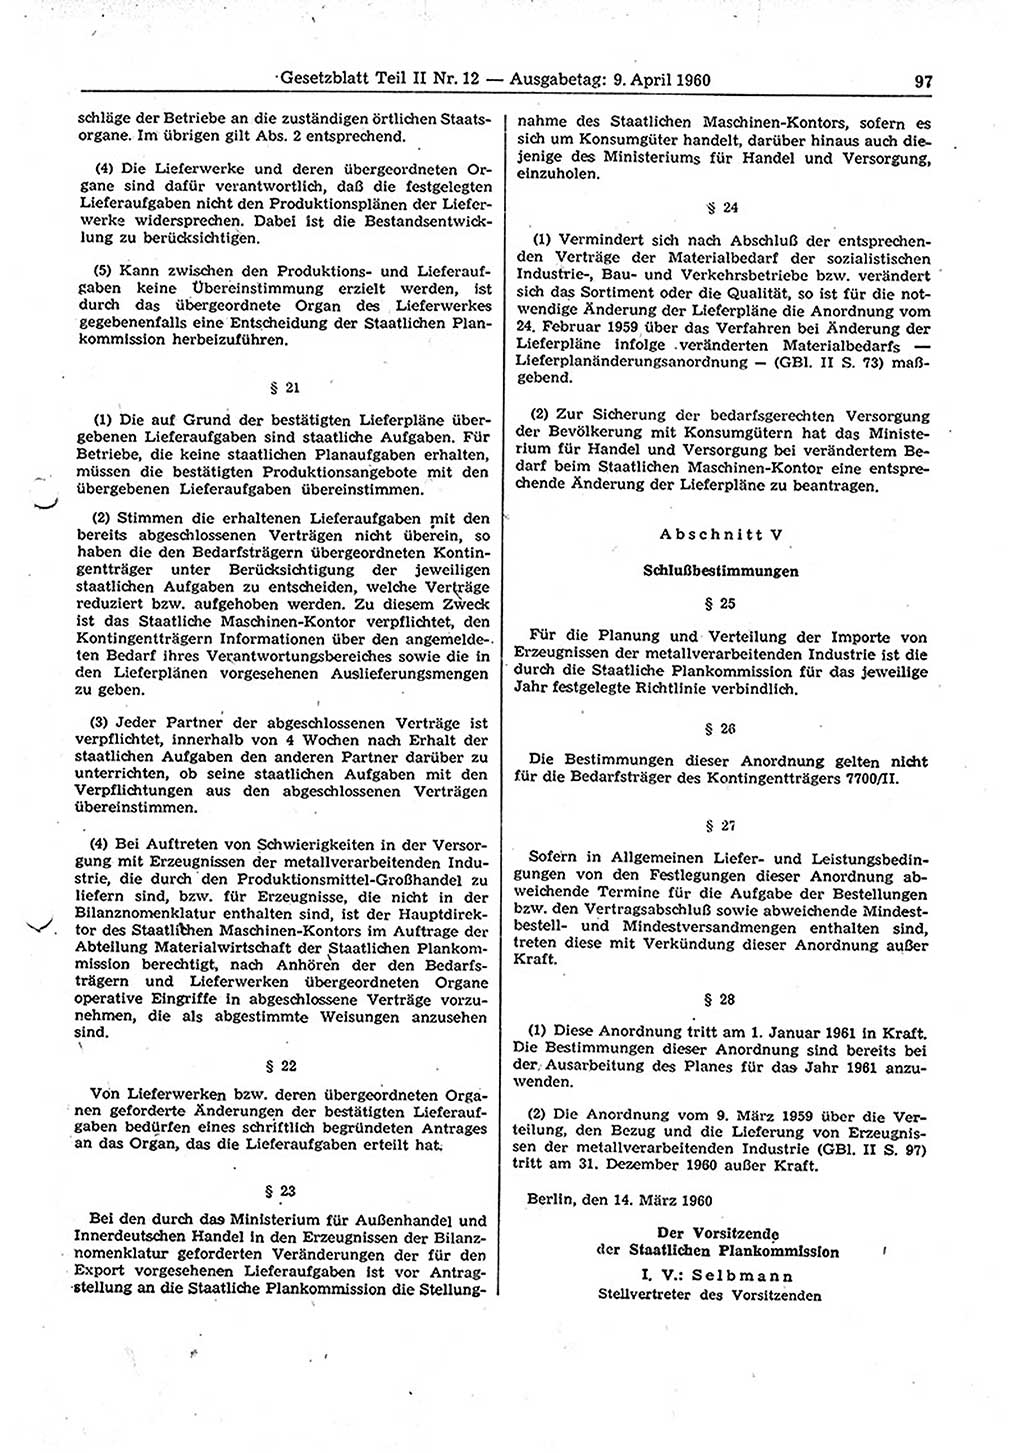 Gesetzblatt (GBl.) der Deutschen Demokratischen Republik (DDR) Teil ⅠⅠ 1960, Seite 97 (GBl. DDR ⅠⅠ 1960, S. 97)